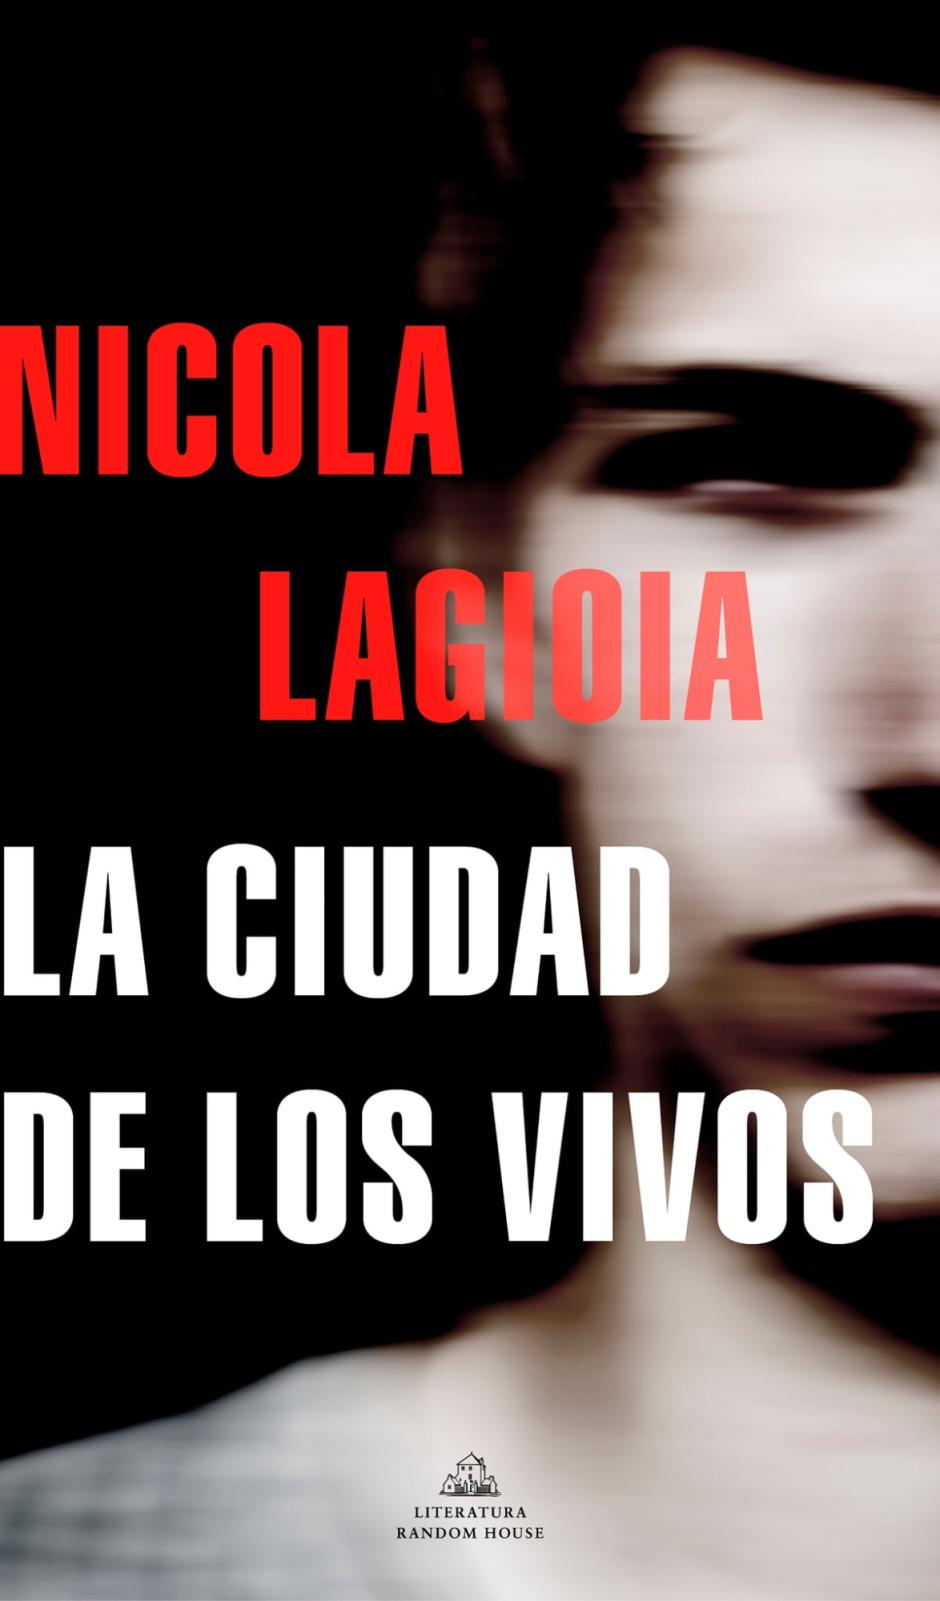 La ciudad de los vivos» de Nicola Lagioia